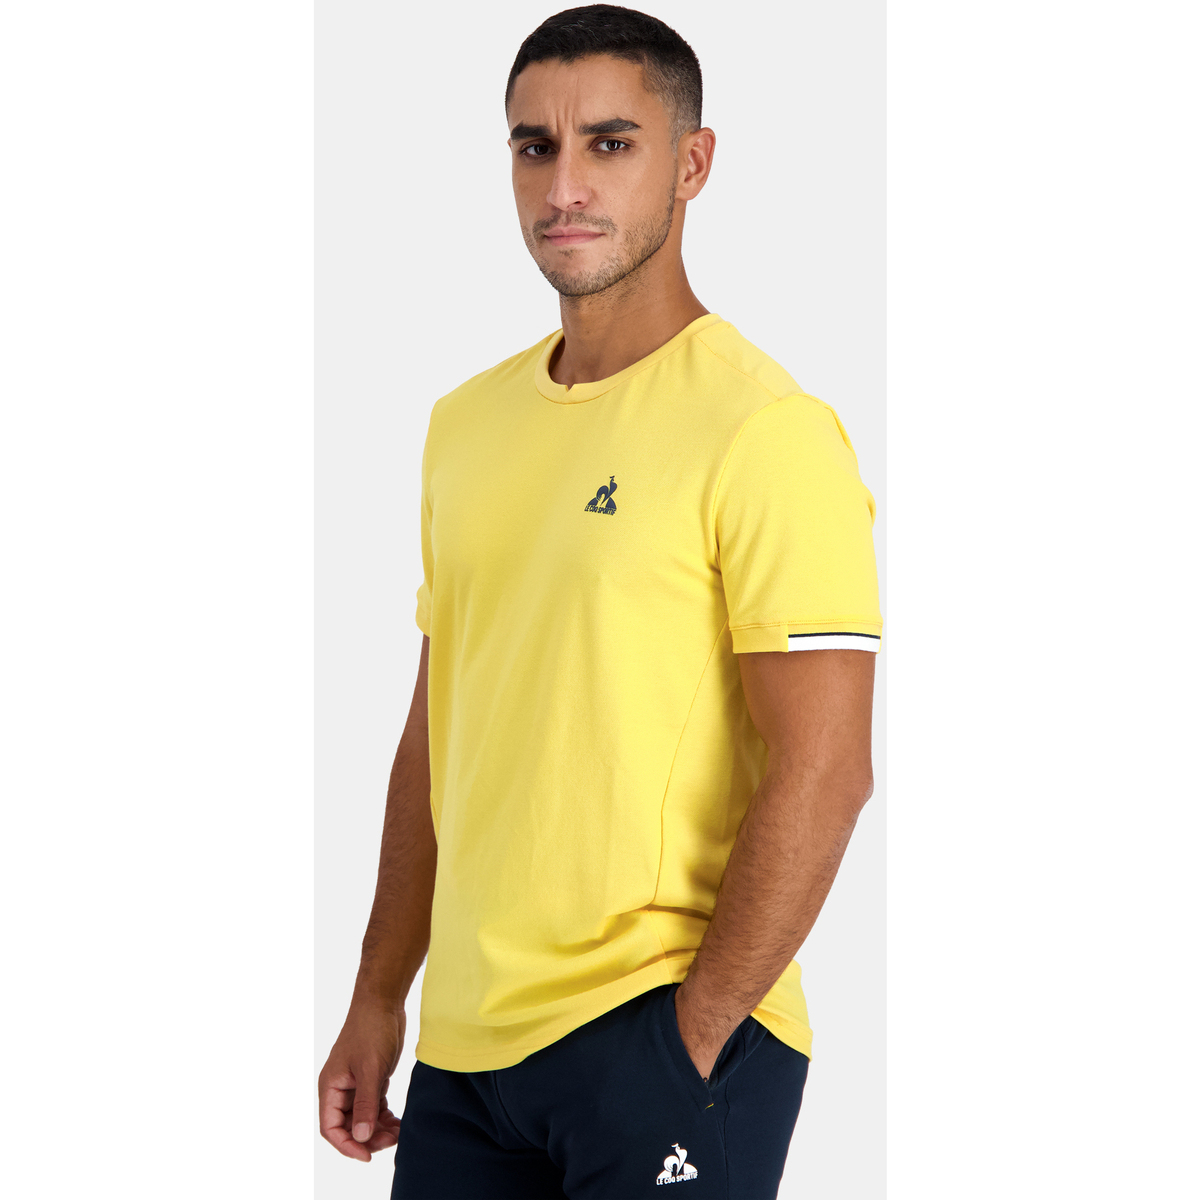 Le Coq Sportif Jaune T-shirt Homme iGZhPJHO